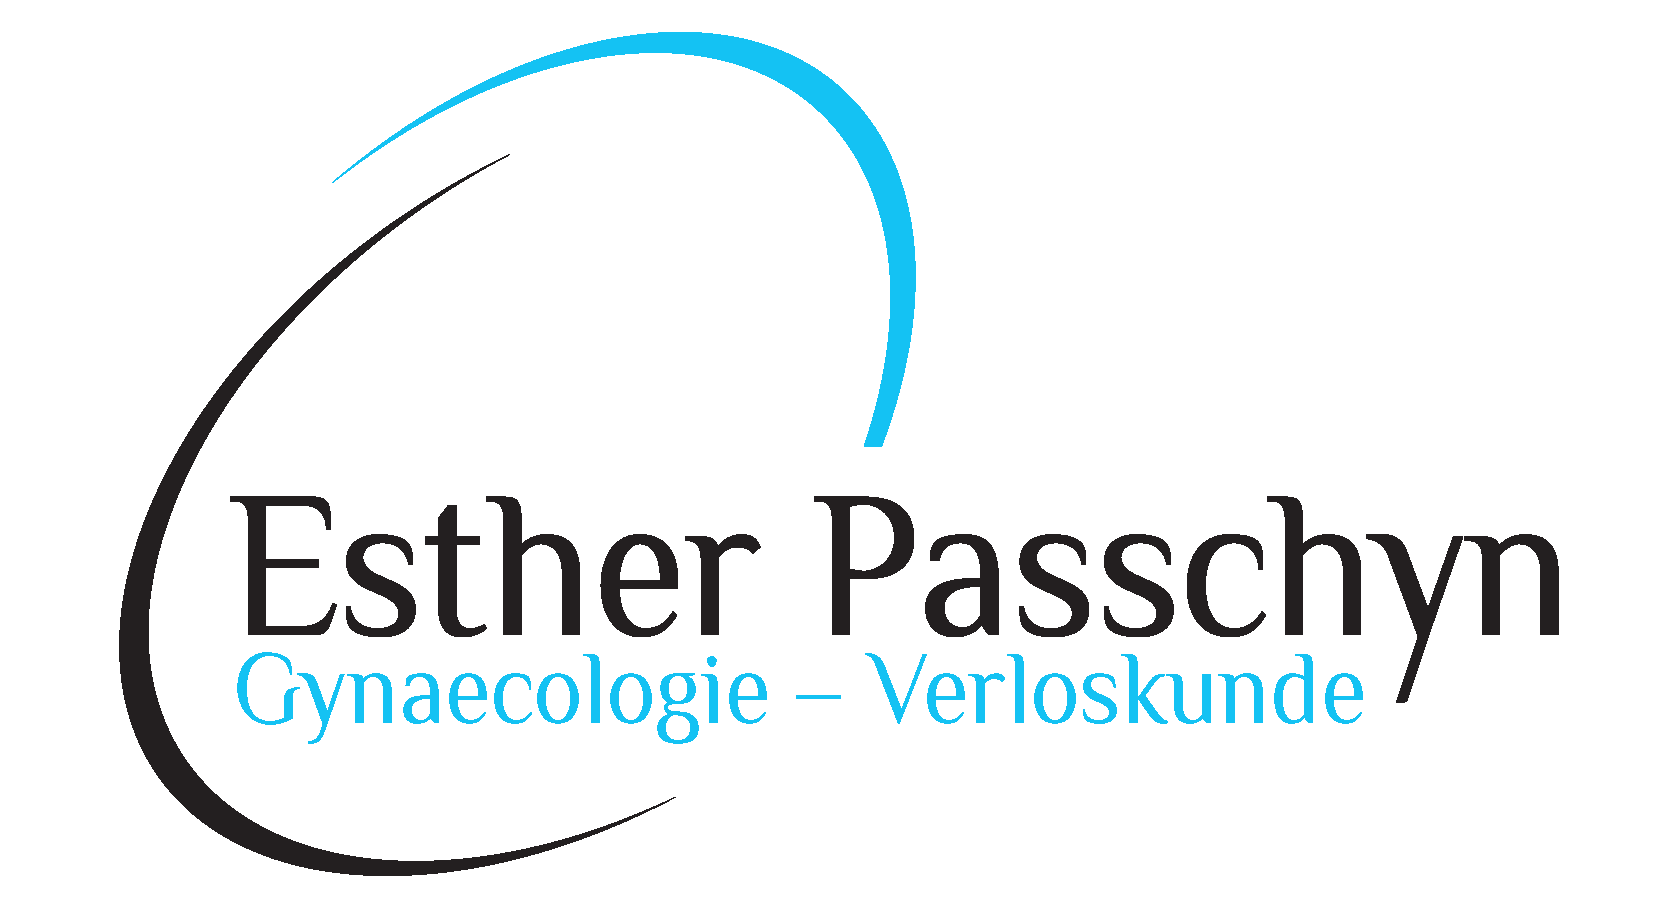 Dr. Esther Passchyn